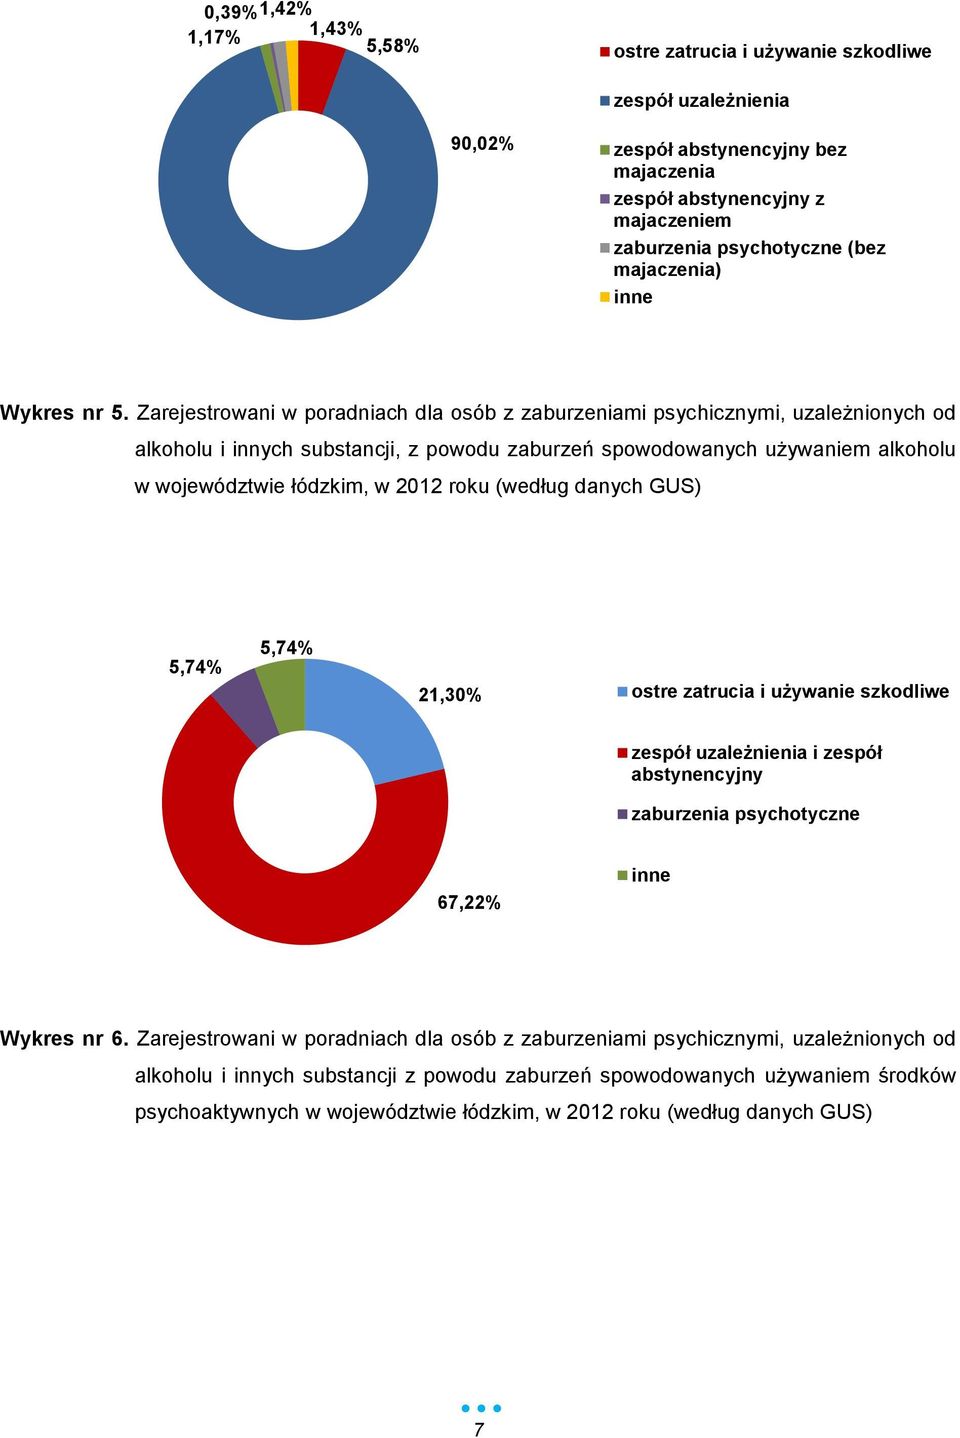 Zarejestrowani w poradniach dla osób z zaburzeniami psychicznymi, uzależnionych od alkoholu i innych substancji, z powodu zaburzeń spowodowanych używaniem alkoholu w województwie łódzkim, w 2012 roku